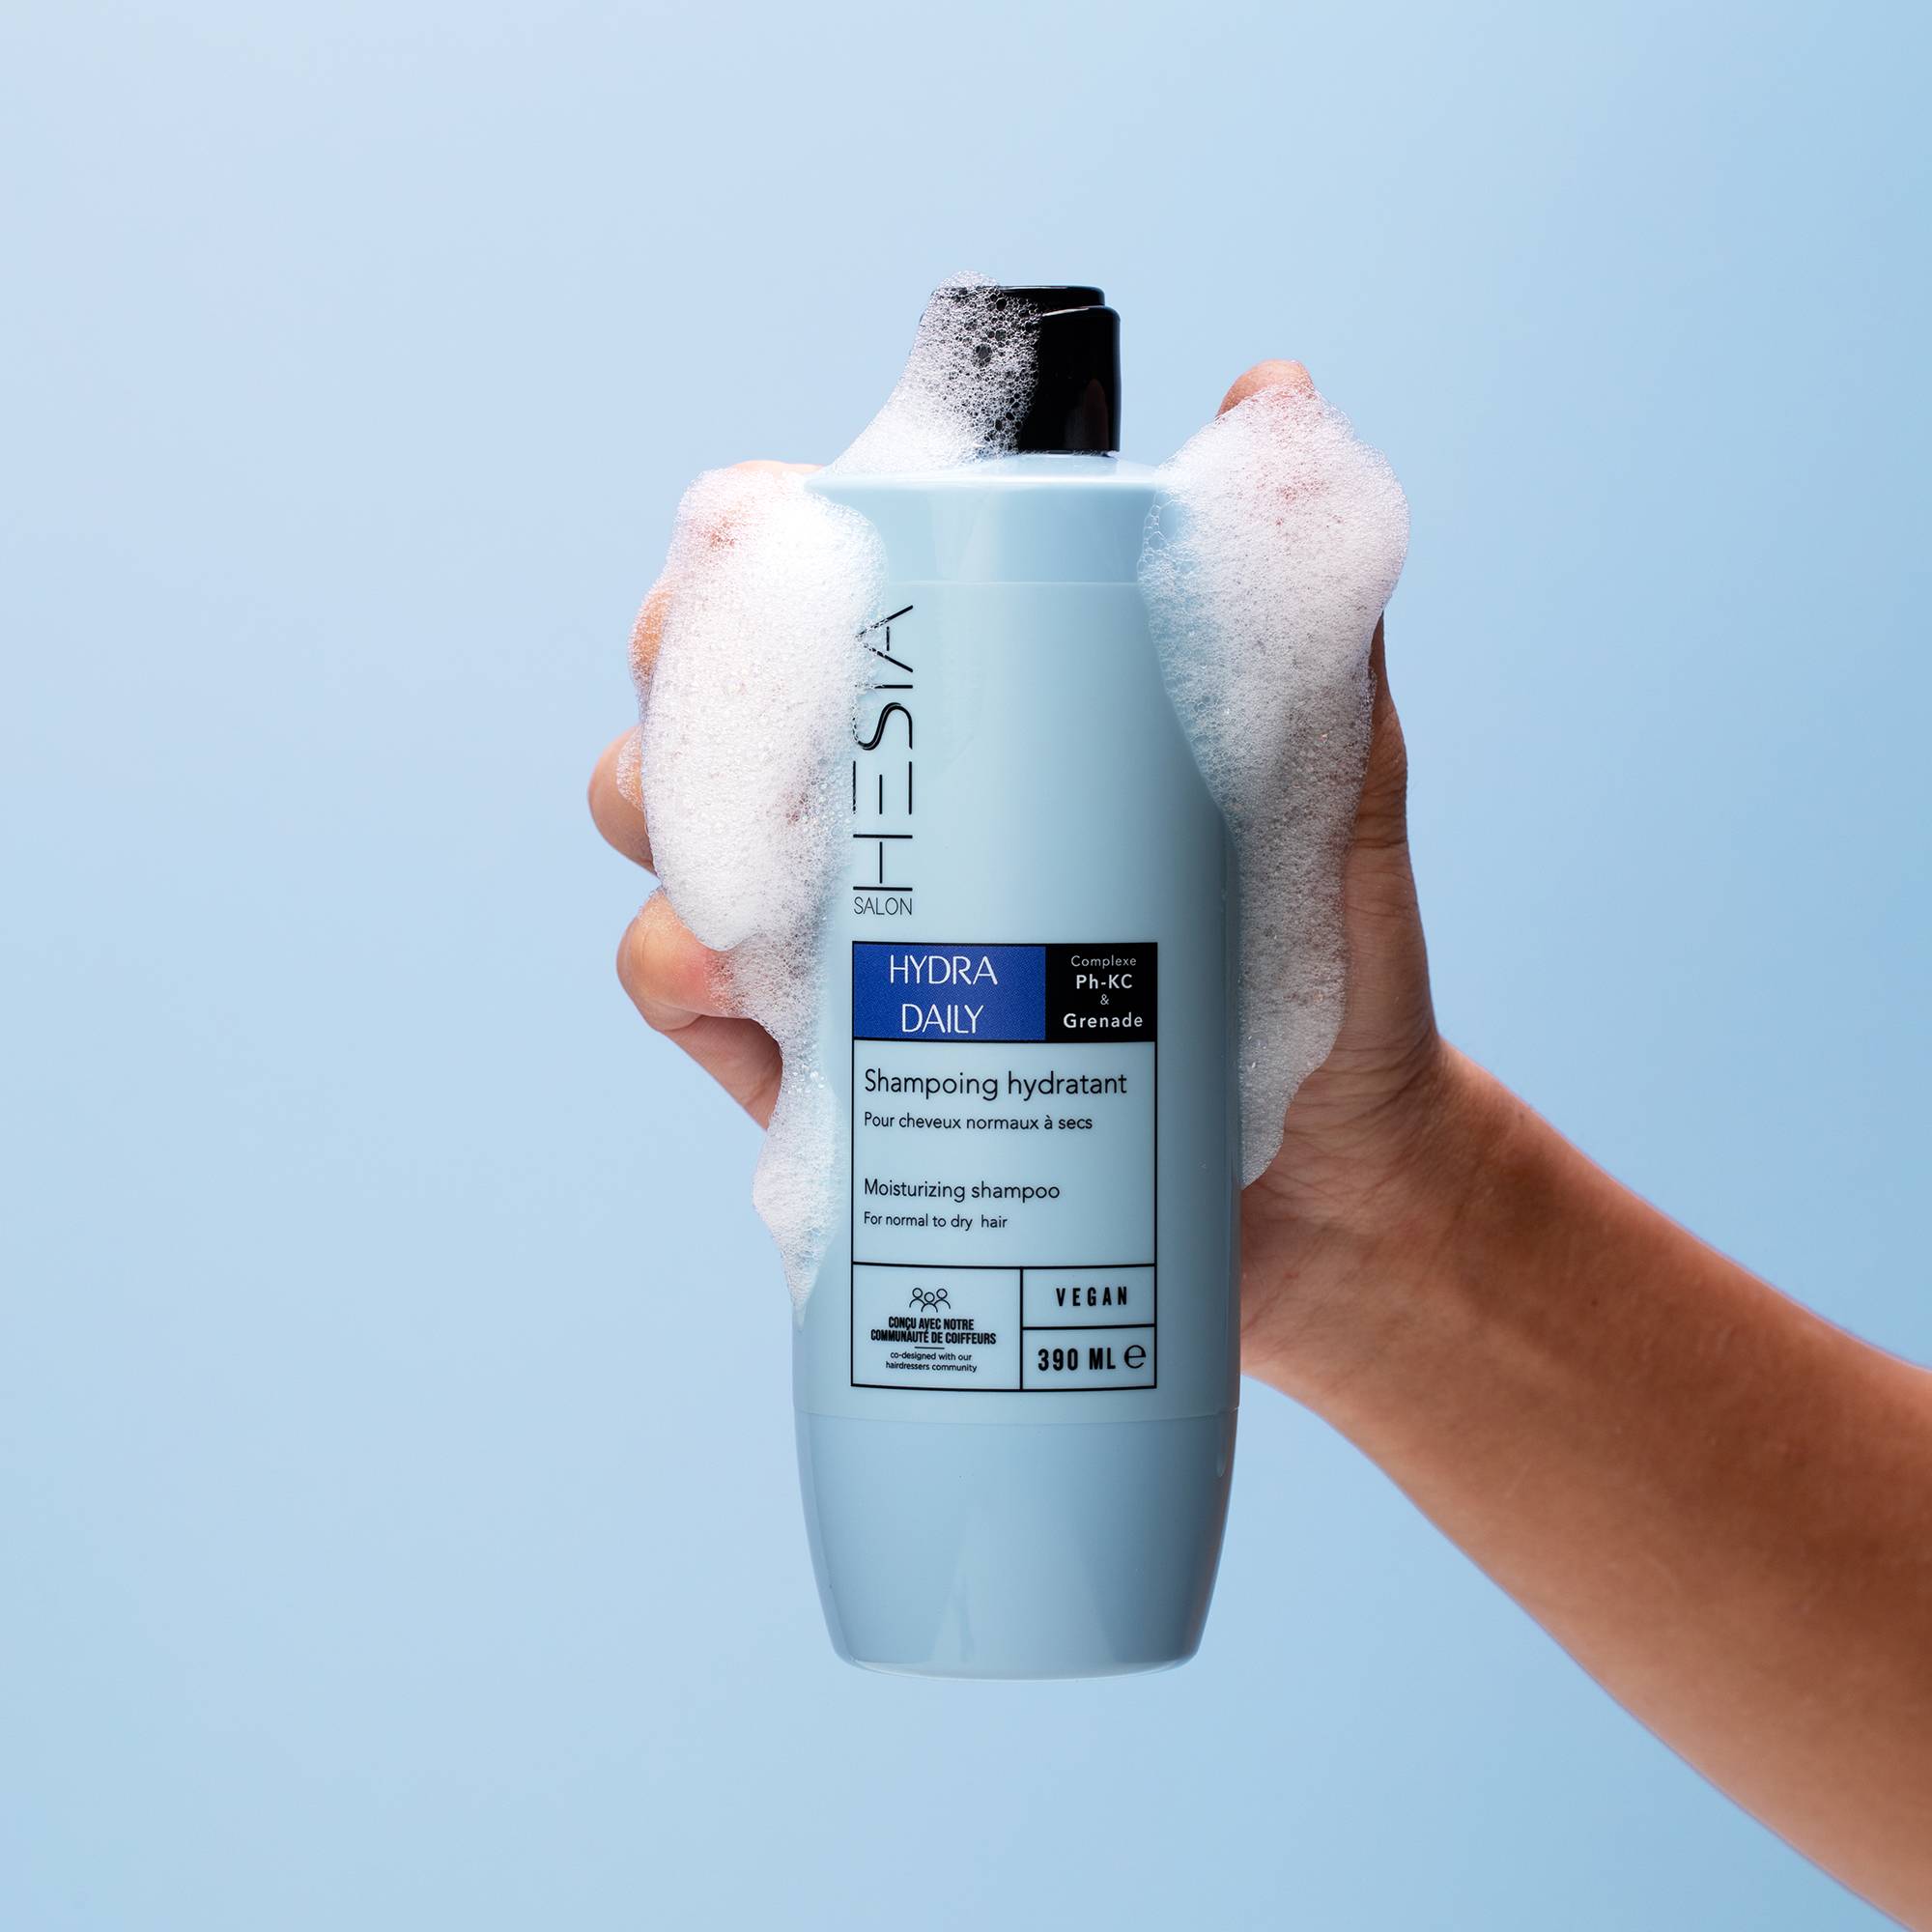 Shampoing hydratant Hydra Daily de la marque HESIA Salon Contenance 390ml - 3